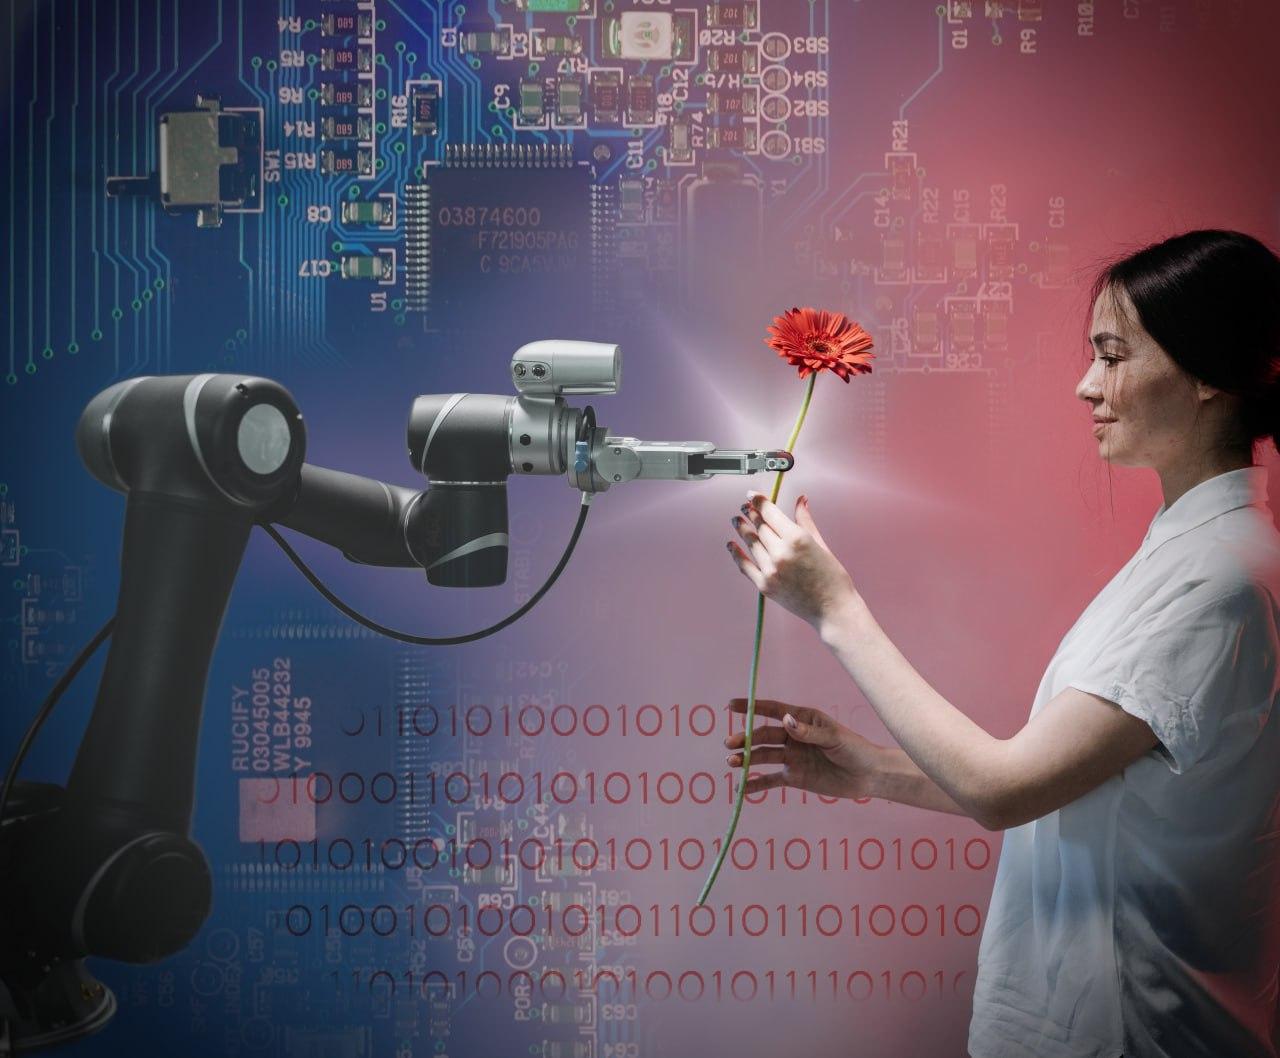 Figura che mostra un braccio robotico controllato elettronicamente che dona un fiore a una ragazza.